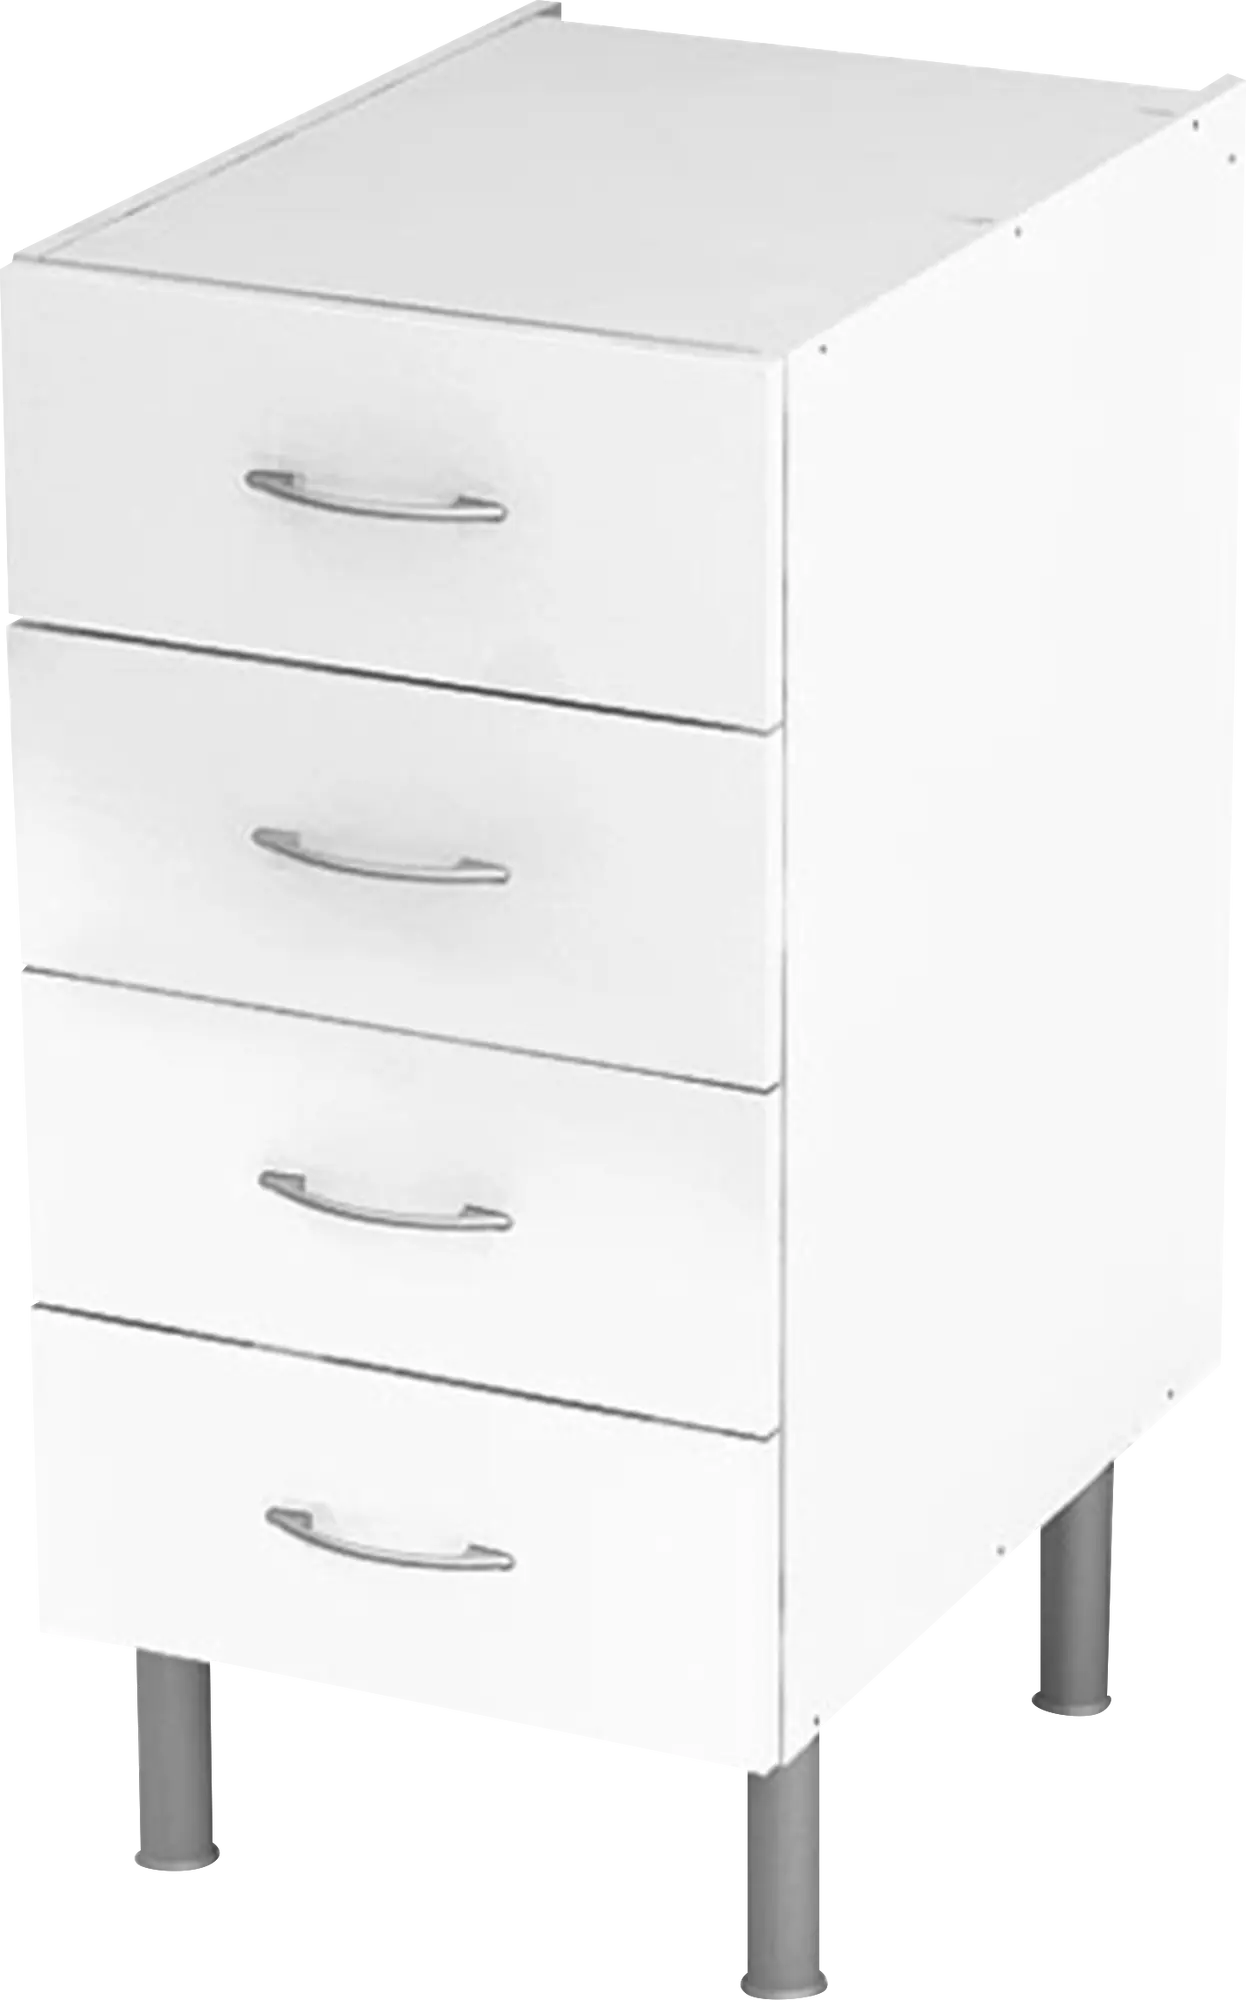 Mueble BASIC blanco 4 cajones fabricado en aglomerado 40 x 70 cm | Leroy Merlin